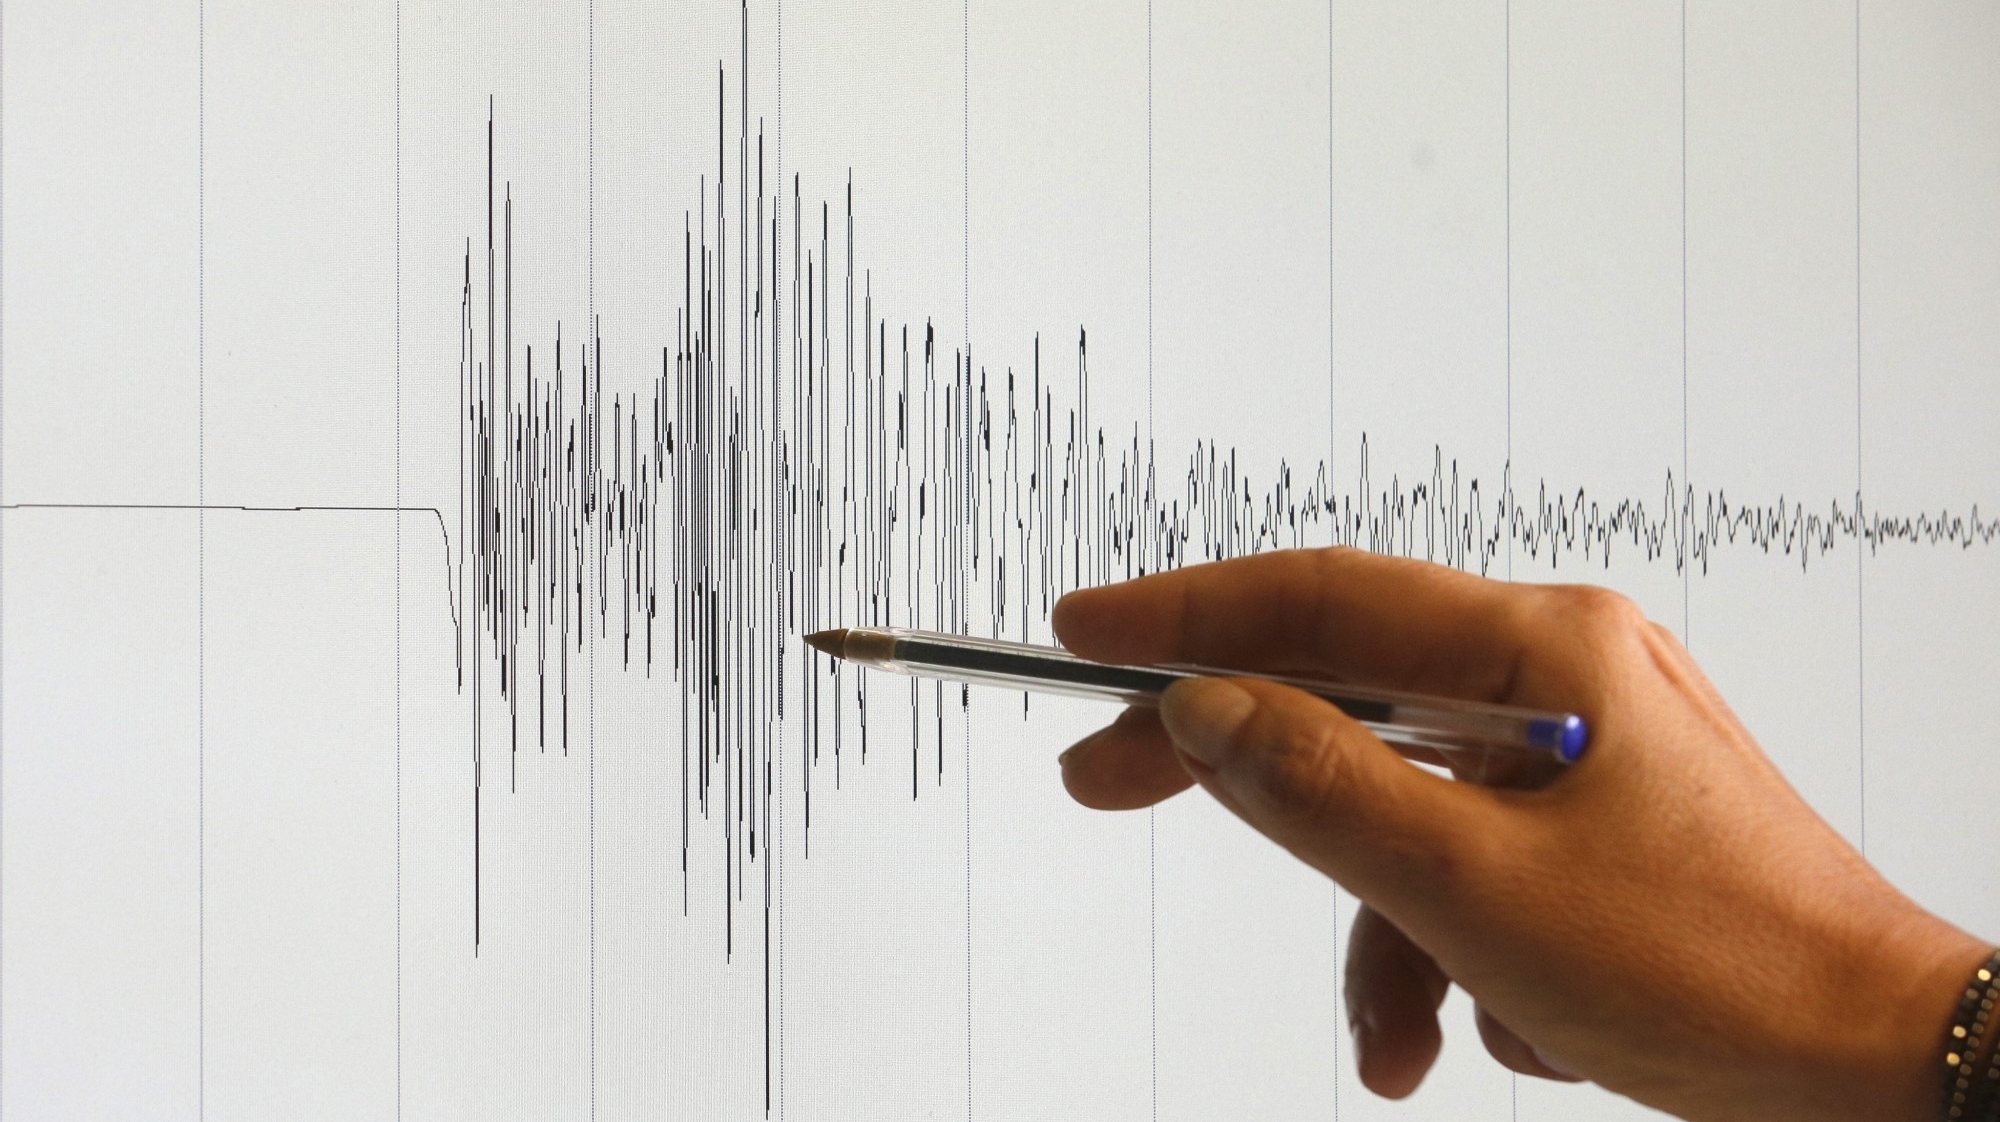 Proteção Civil defende atualização de estudo de risco sísmico do Algarve datado de 2009